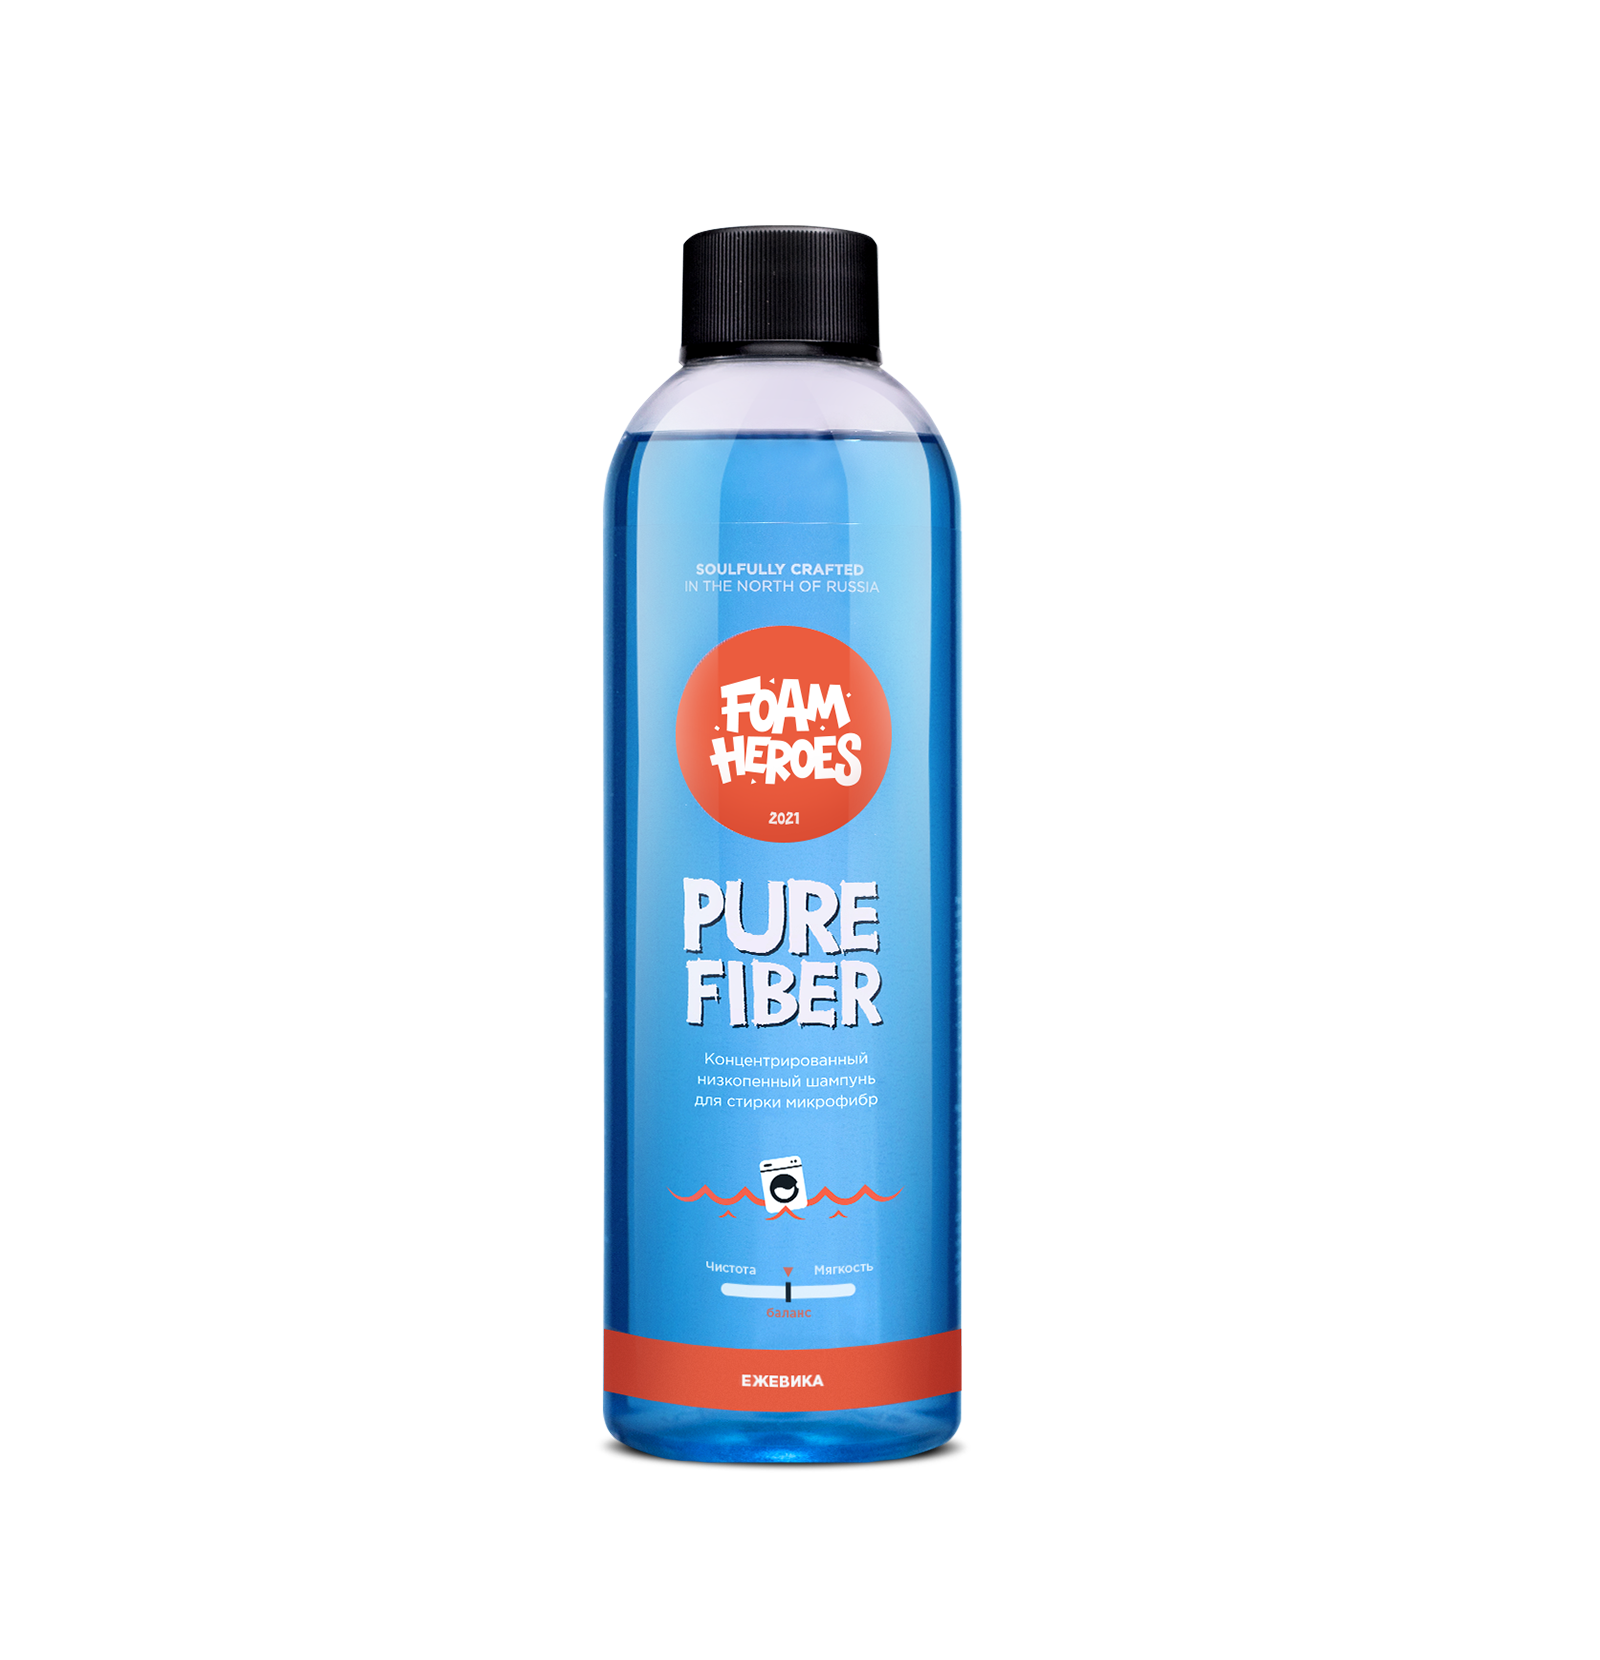 Pure Fiber низкопенный шампунь для стирки микрофибры, 500мл (Фирменный стикер в комплекте) - Foam Heroes FHB049